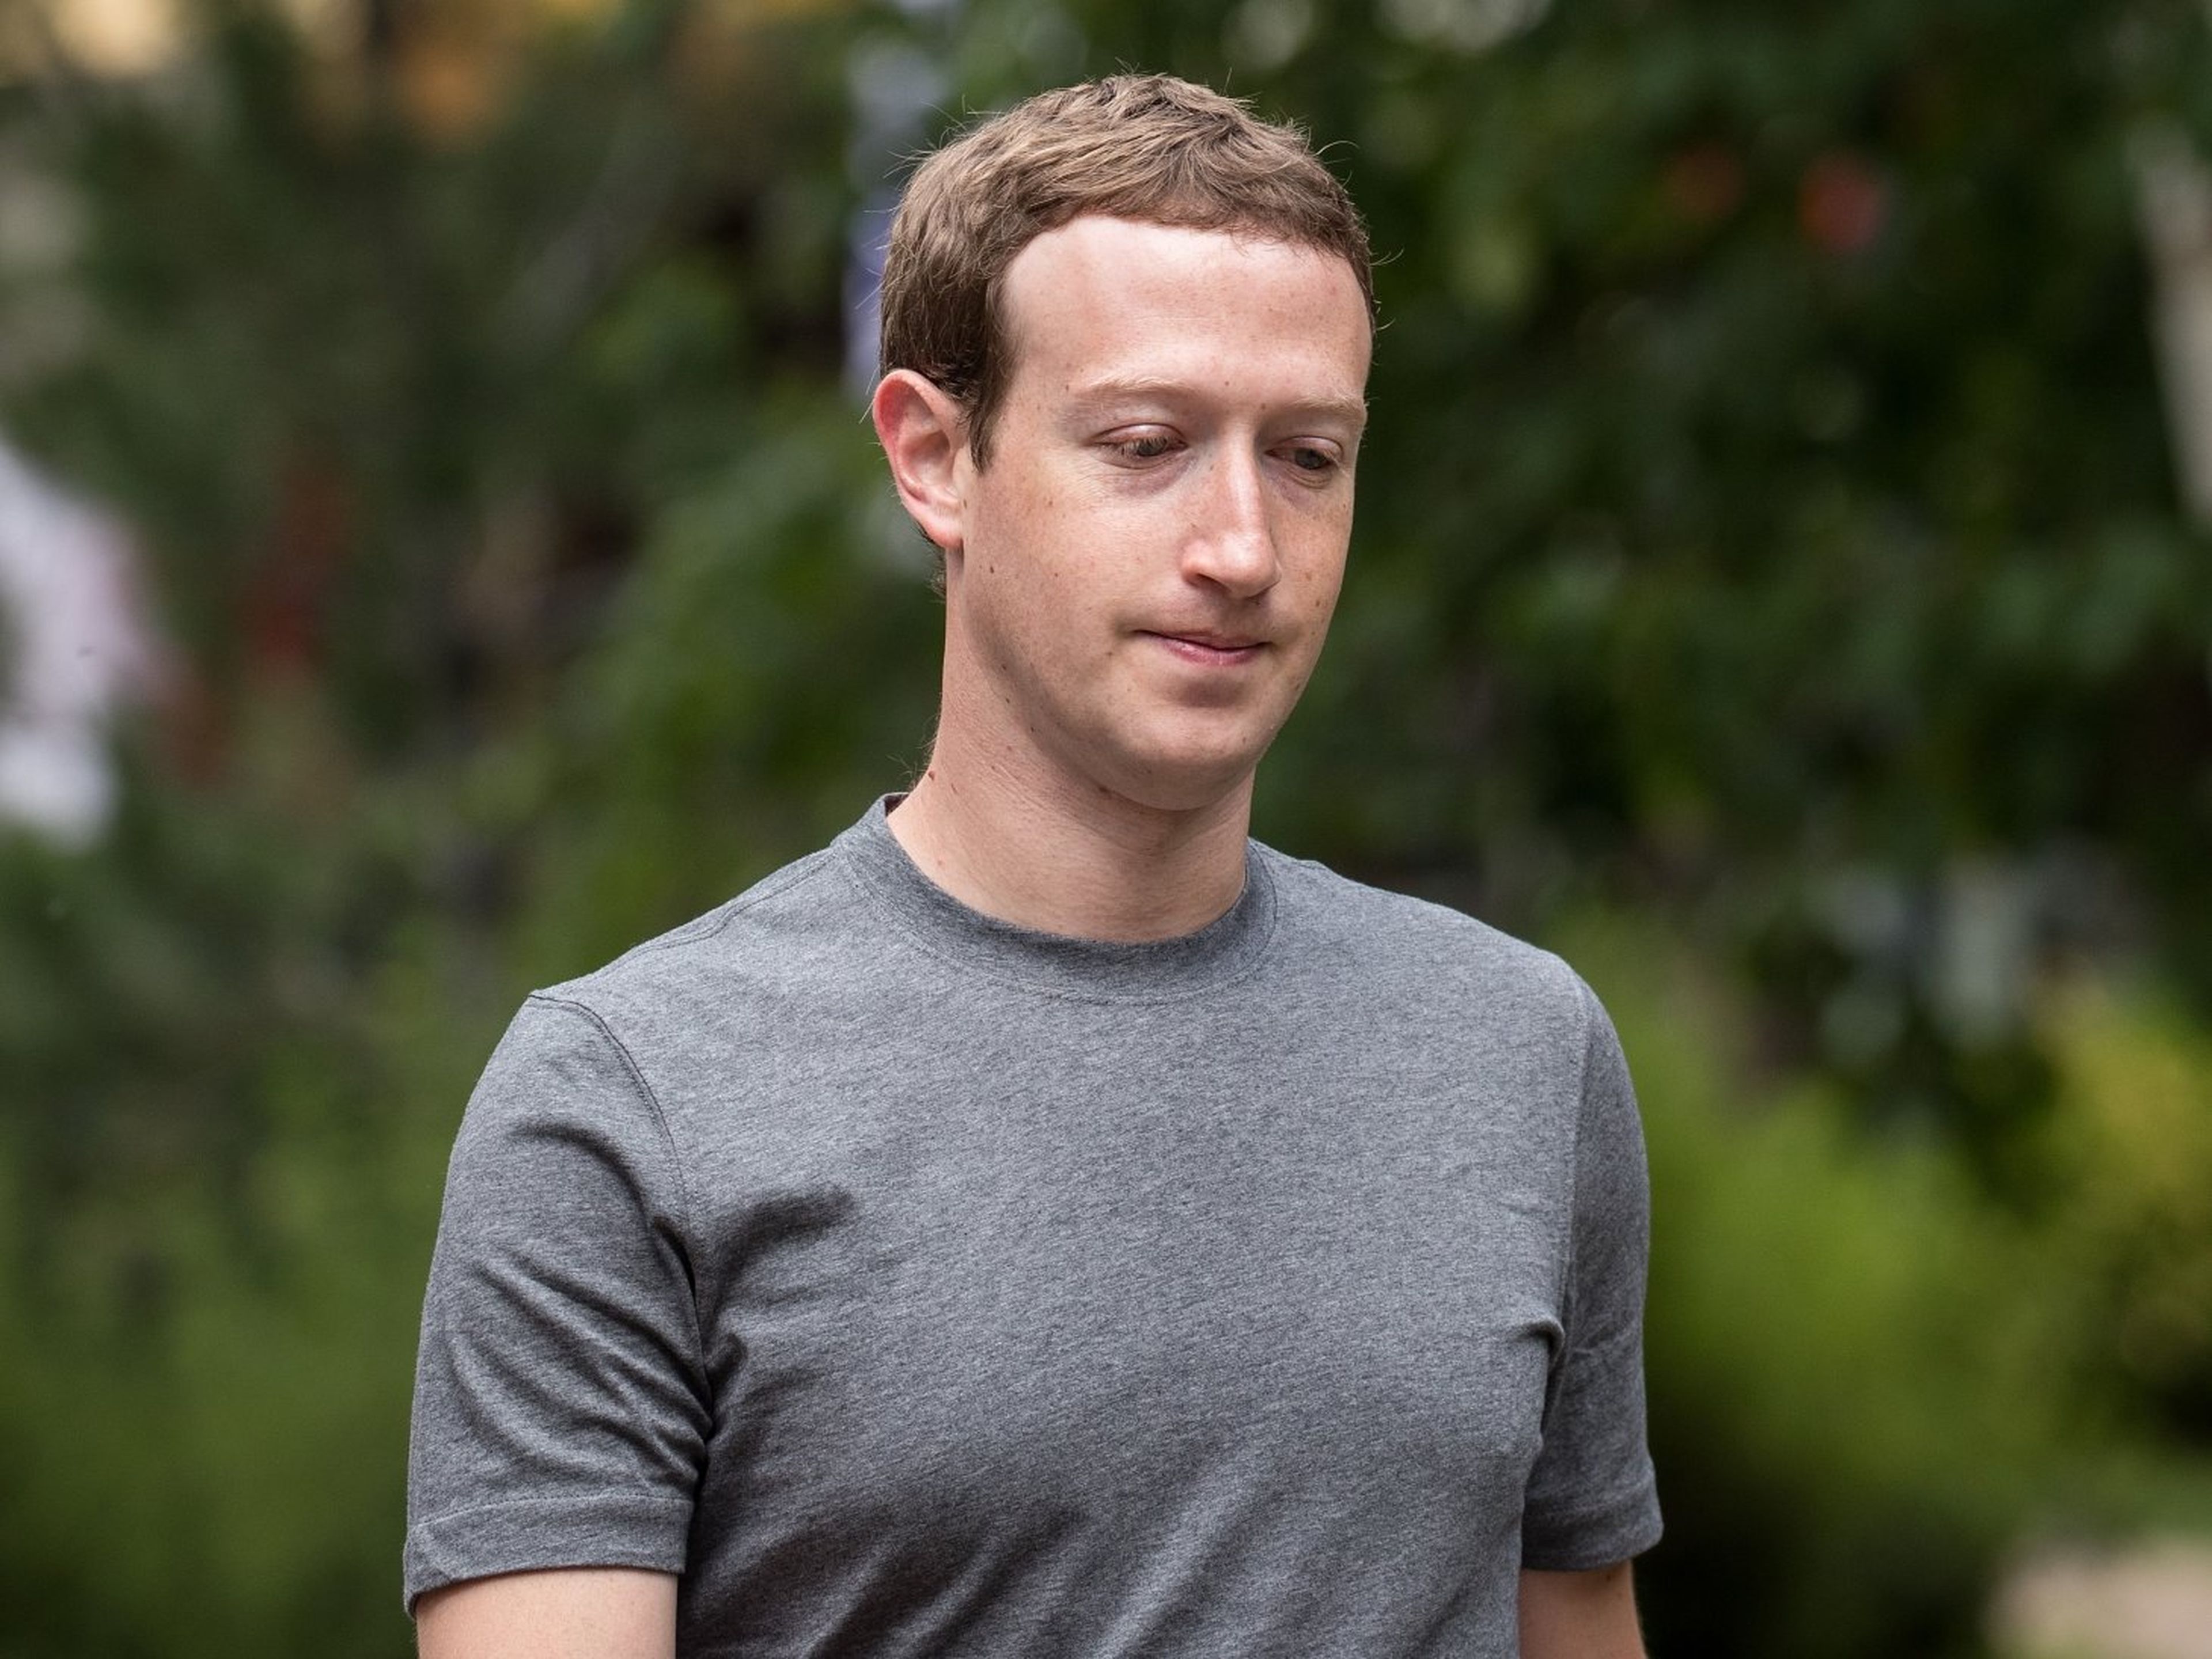 Descripción Los usuarios de Facebook se están perdiendo entusiasmo por la plataforma tras conocerse el escándalo de Cambridge Analytica.